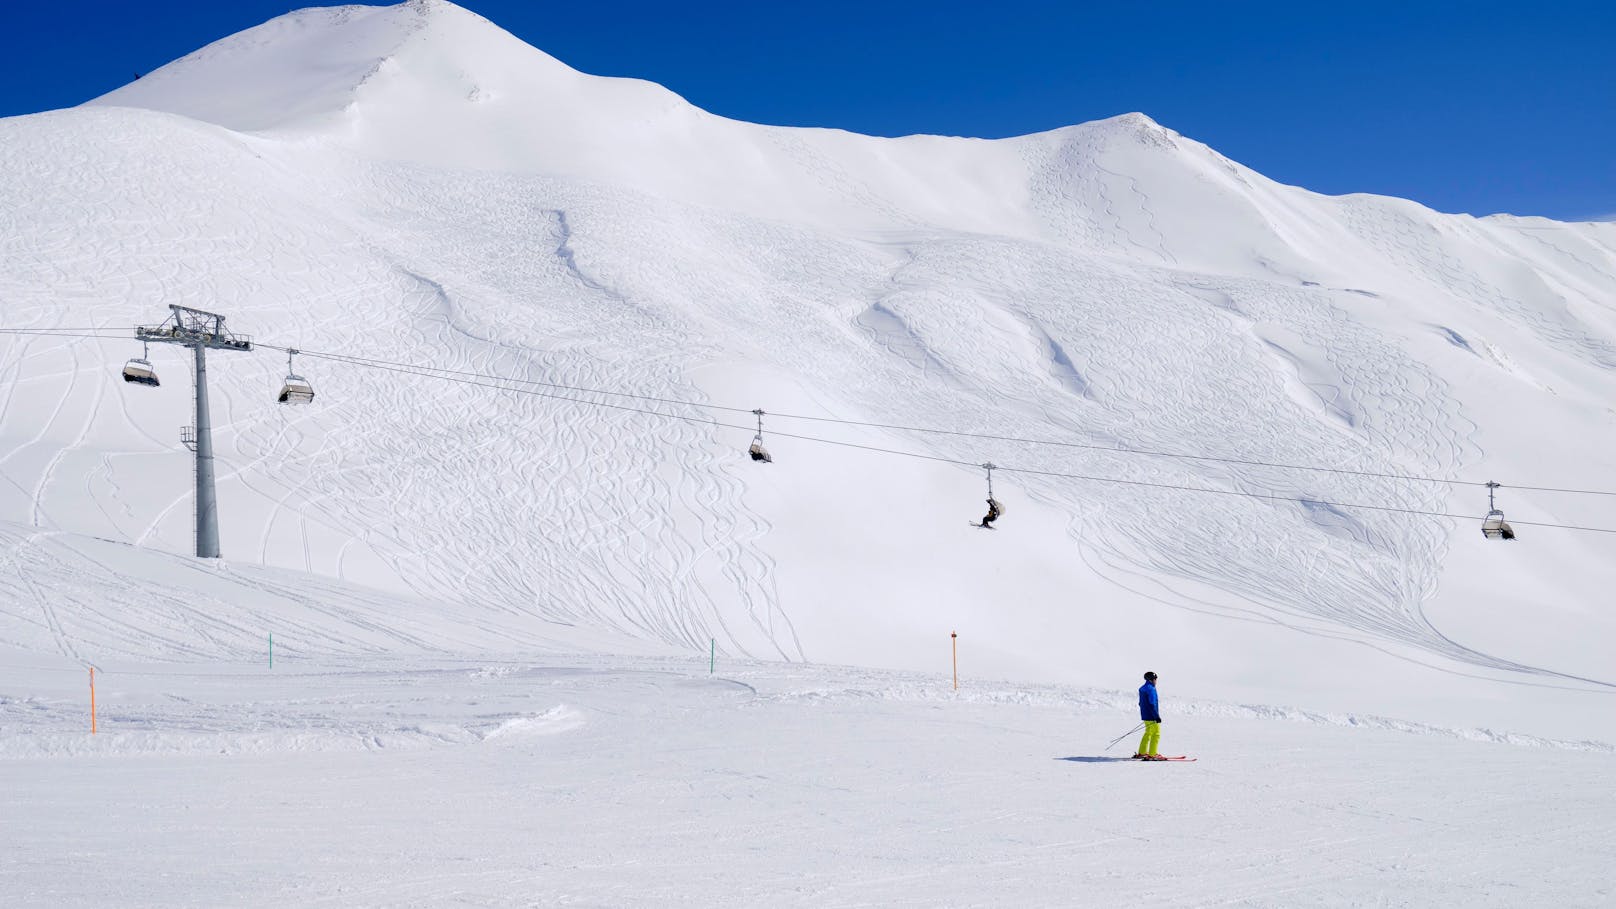 Beliebtes Skigebiet erhöht jetzt Ortstaxe massiv